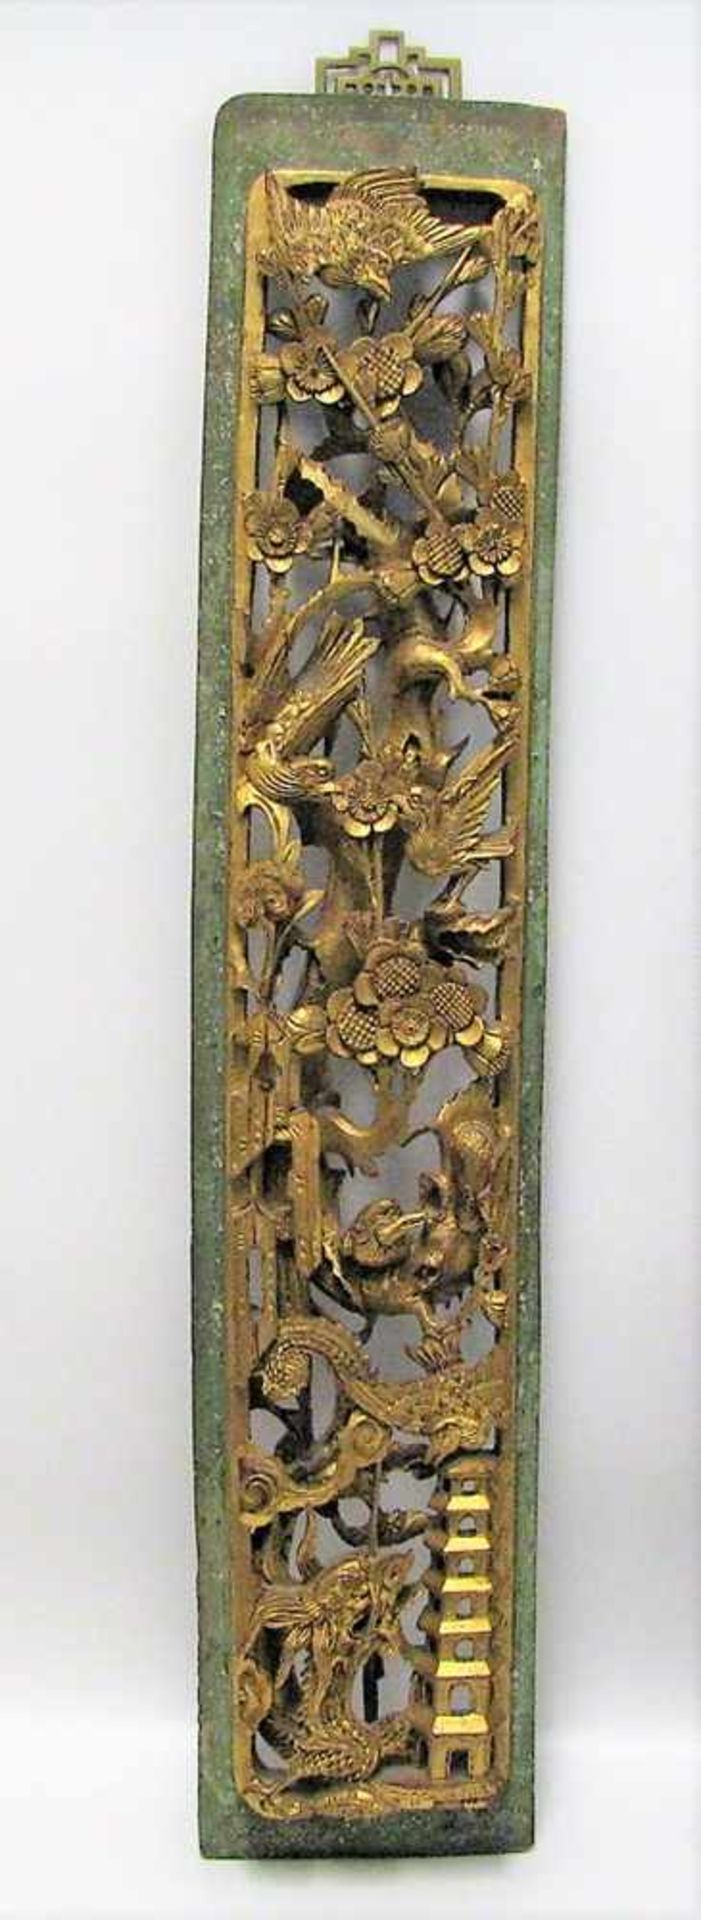 Schnitzerei, China, 19. Jahrhundert, Edelholz fein beschnitzt mit Darstellungen von Drachen,